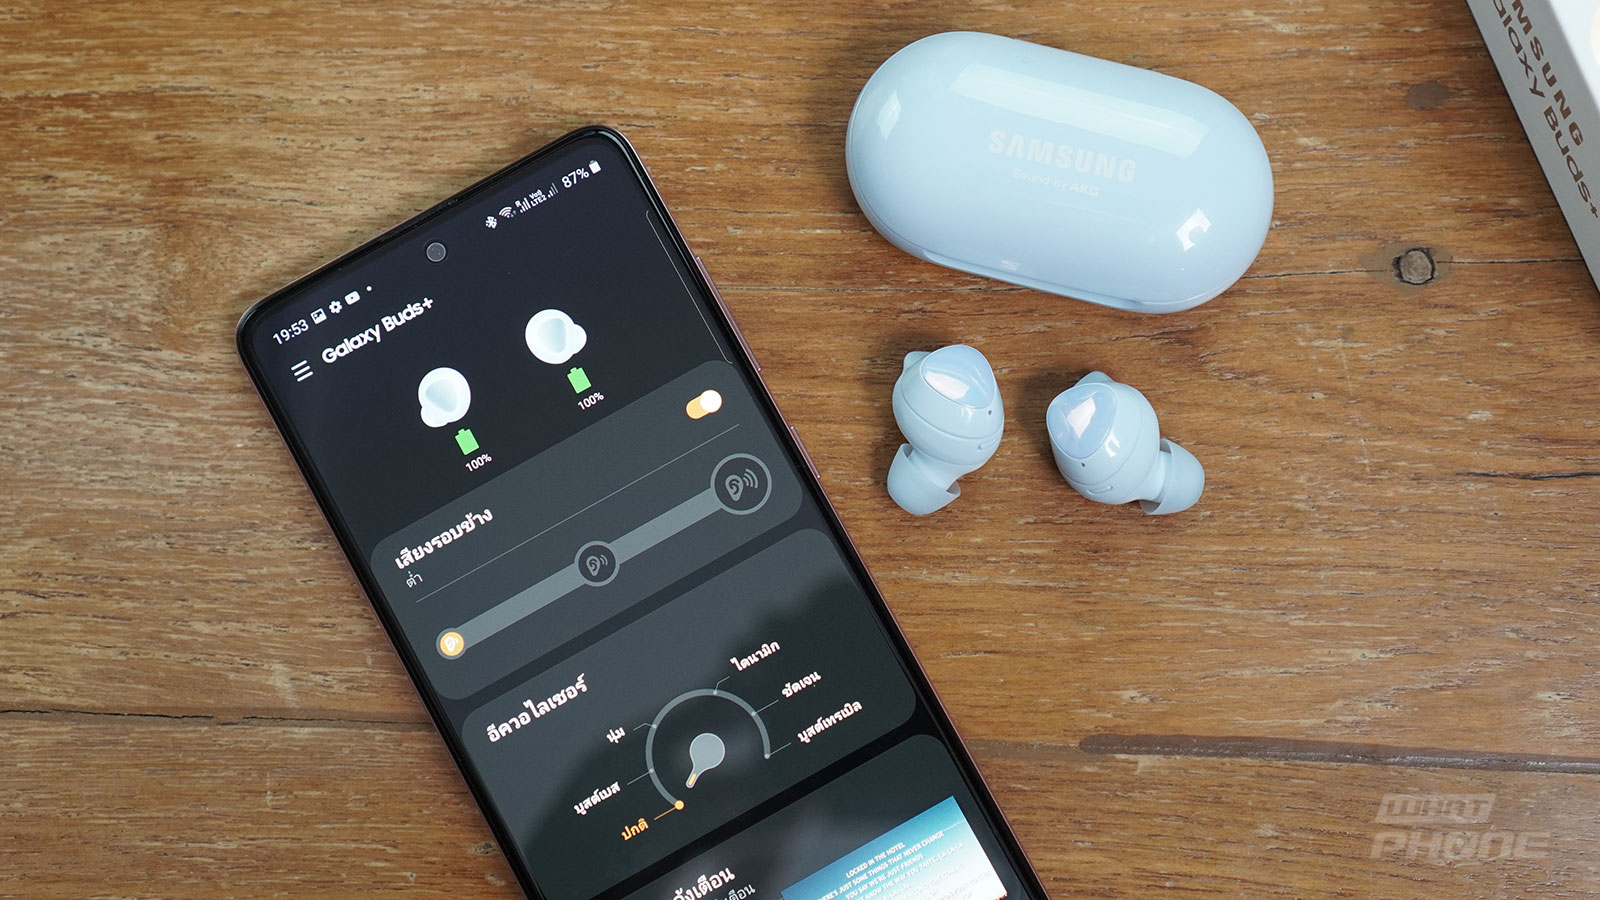 พรีวิว Samsung Galaxy Buds+ หูฟังไร้สาย True wireless รุ่นใหม่ พลัสดีกว่าเดิม